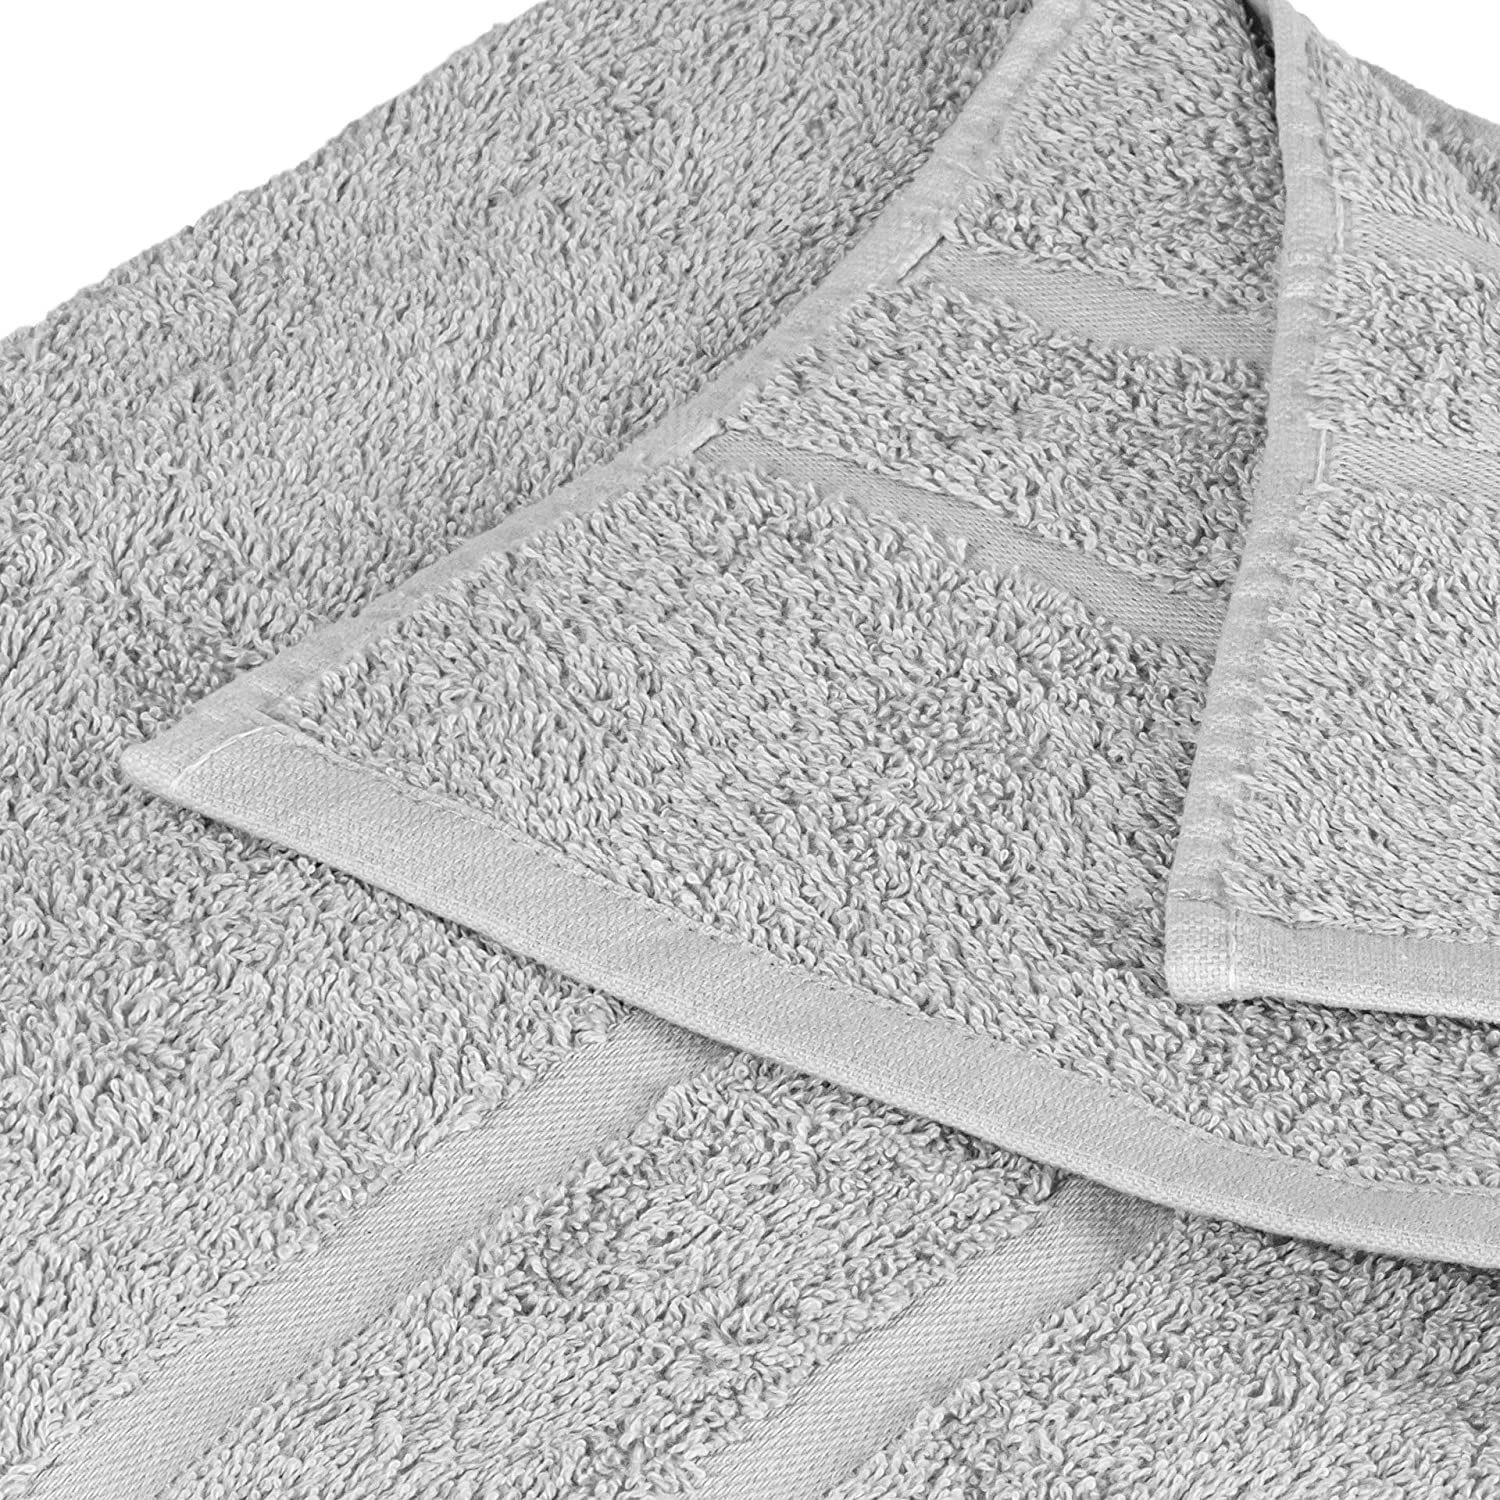 Farben Baumwolle 100% Handtuch SET 500 GSM Hellgrau Pack, 500 Baumwolle Handtuch Set Gästehandtuch Frottee 1x Teilig) StickandShine (4 100% Badetuch Handtuch 1x 1x als GSM verschiedenen 1x in 4er Duschtuch